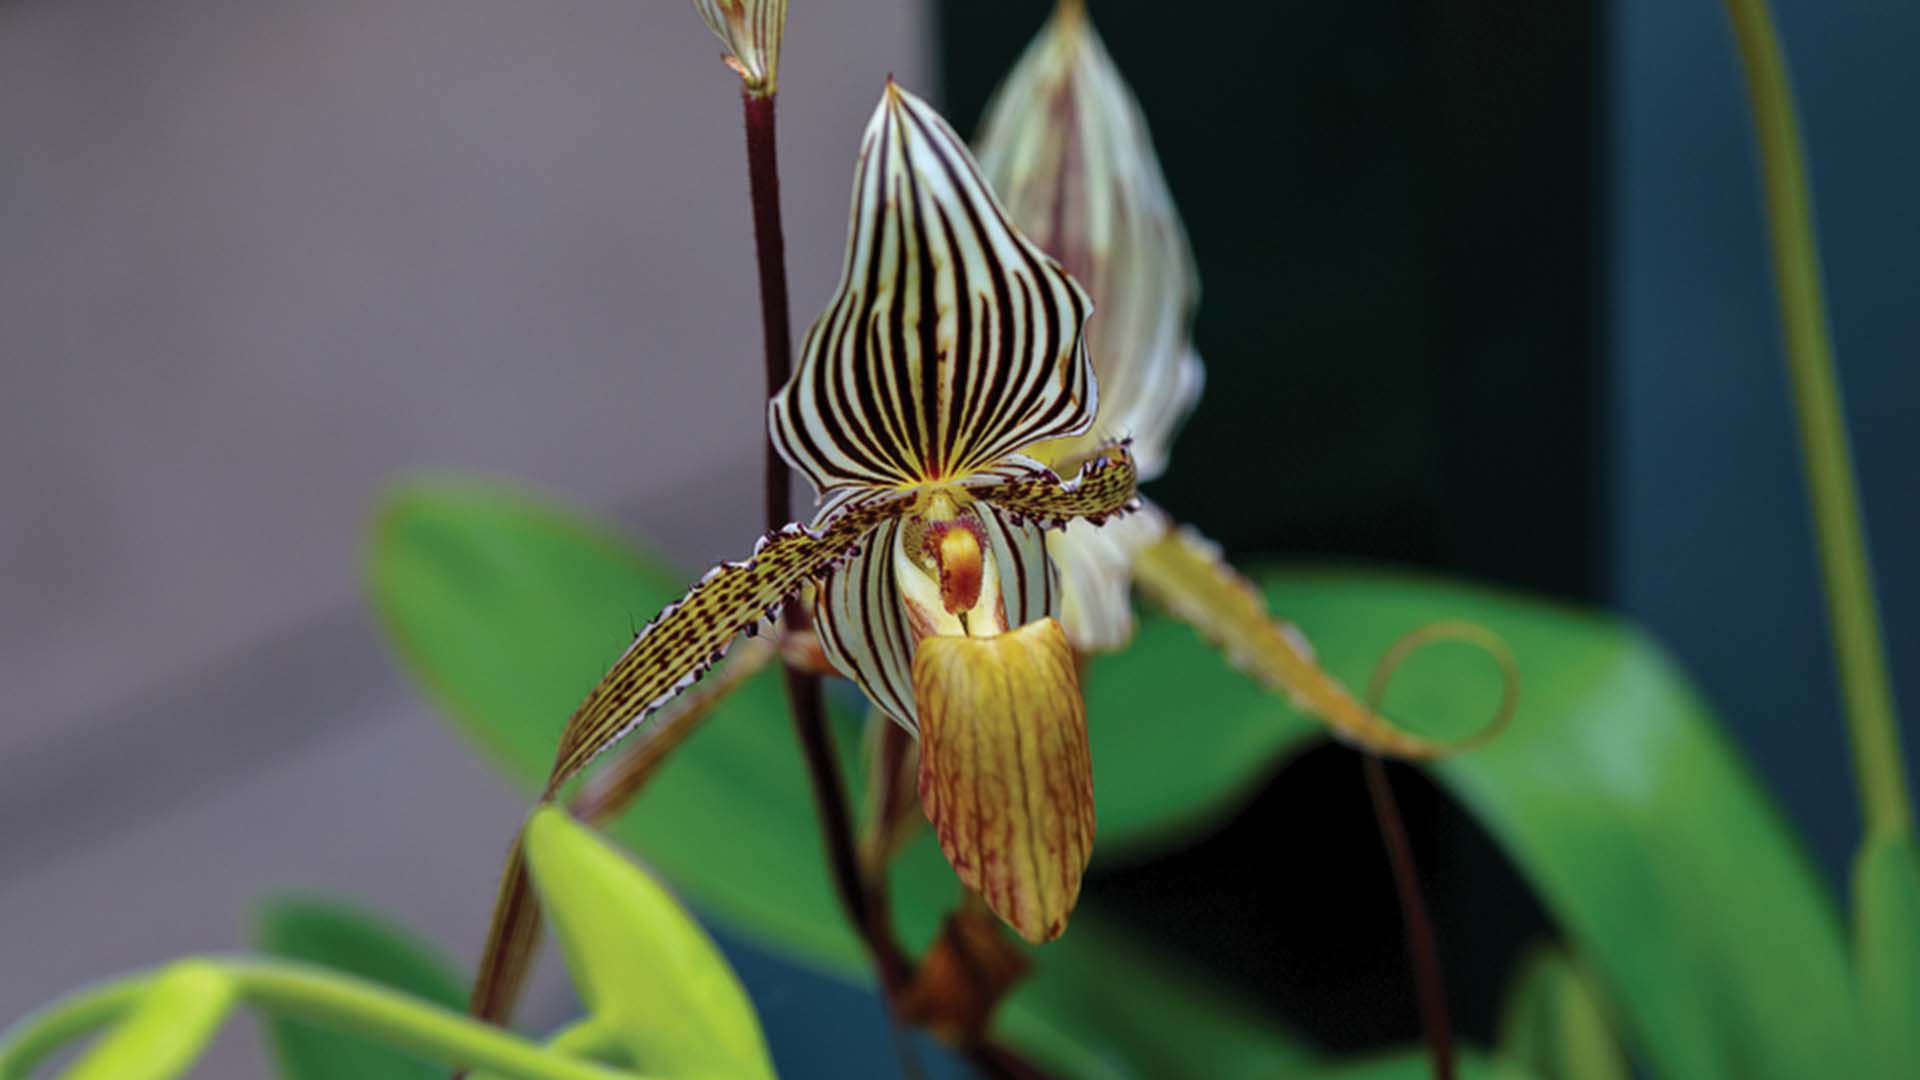 Rothschild's Slipper Orchid Flower